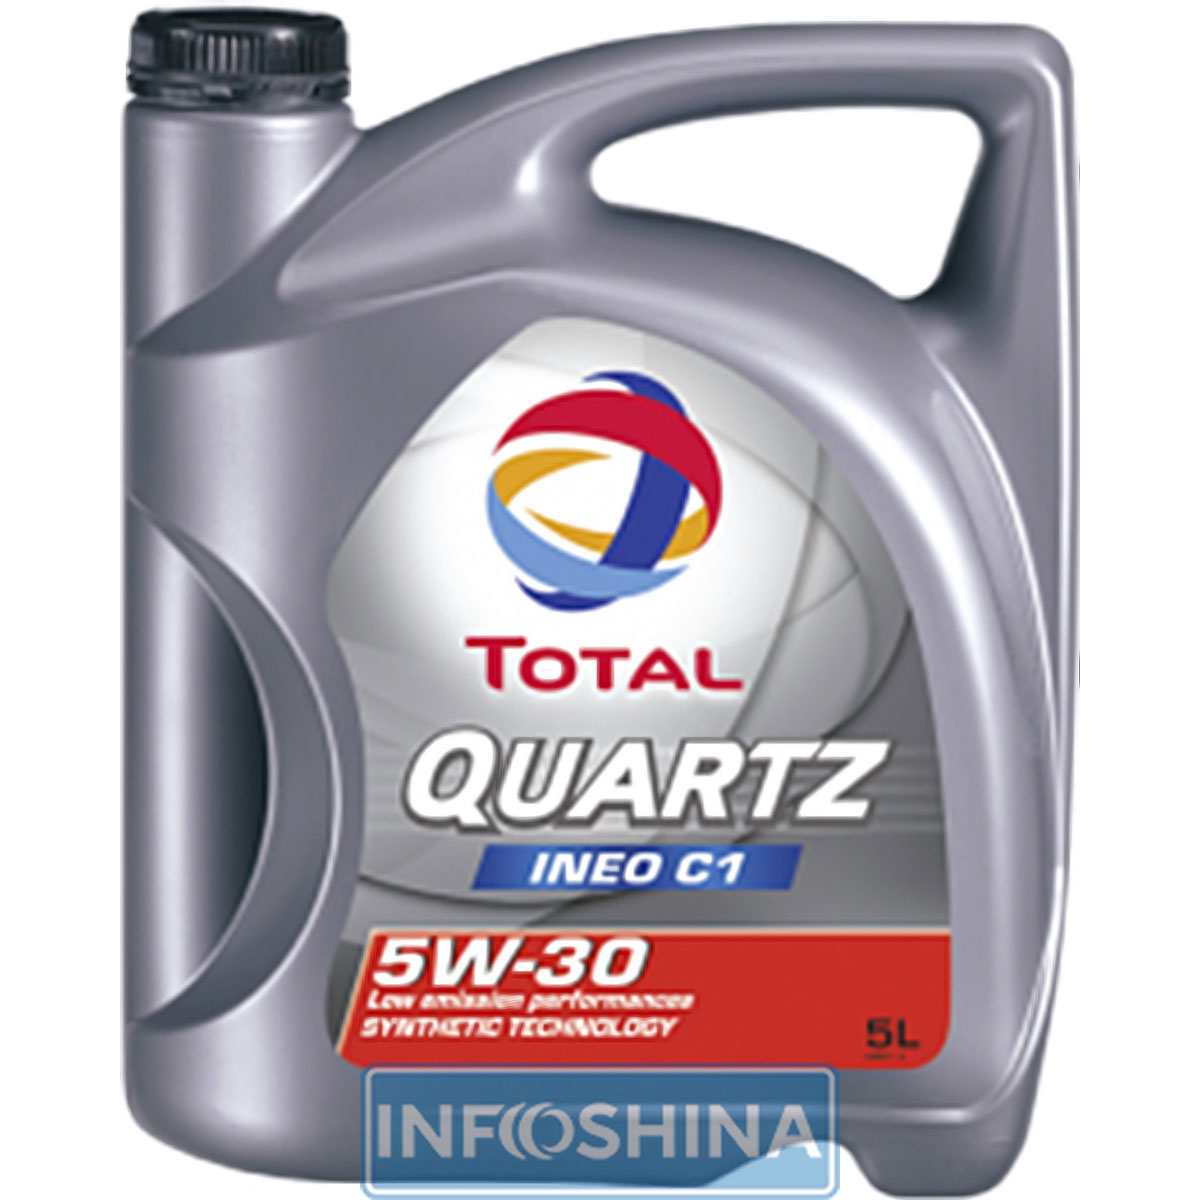 Total Quartz INEO C1 5W-30